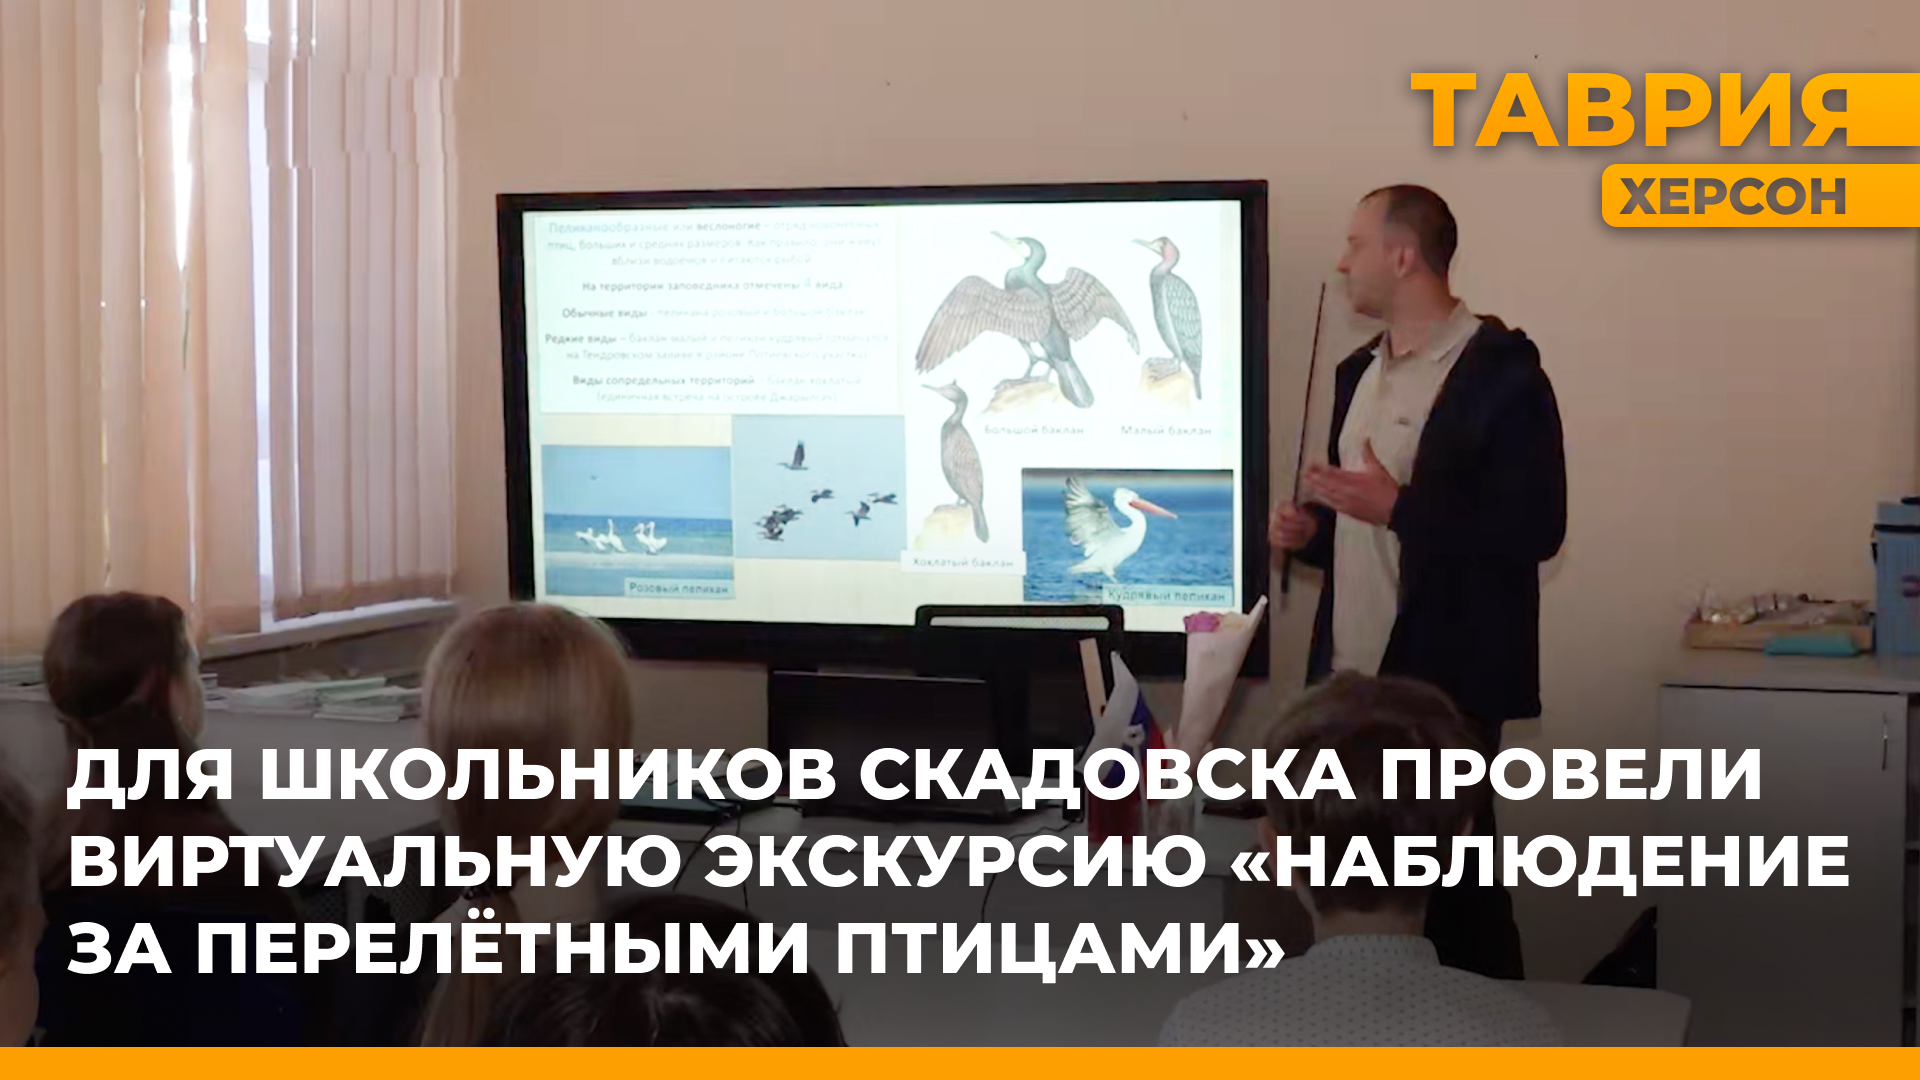 Для школьников Скадовска провели виртуальную экскурсию "Наблюдение за перелетными птицами"